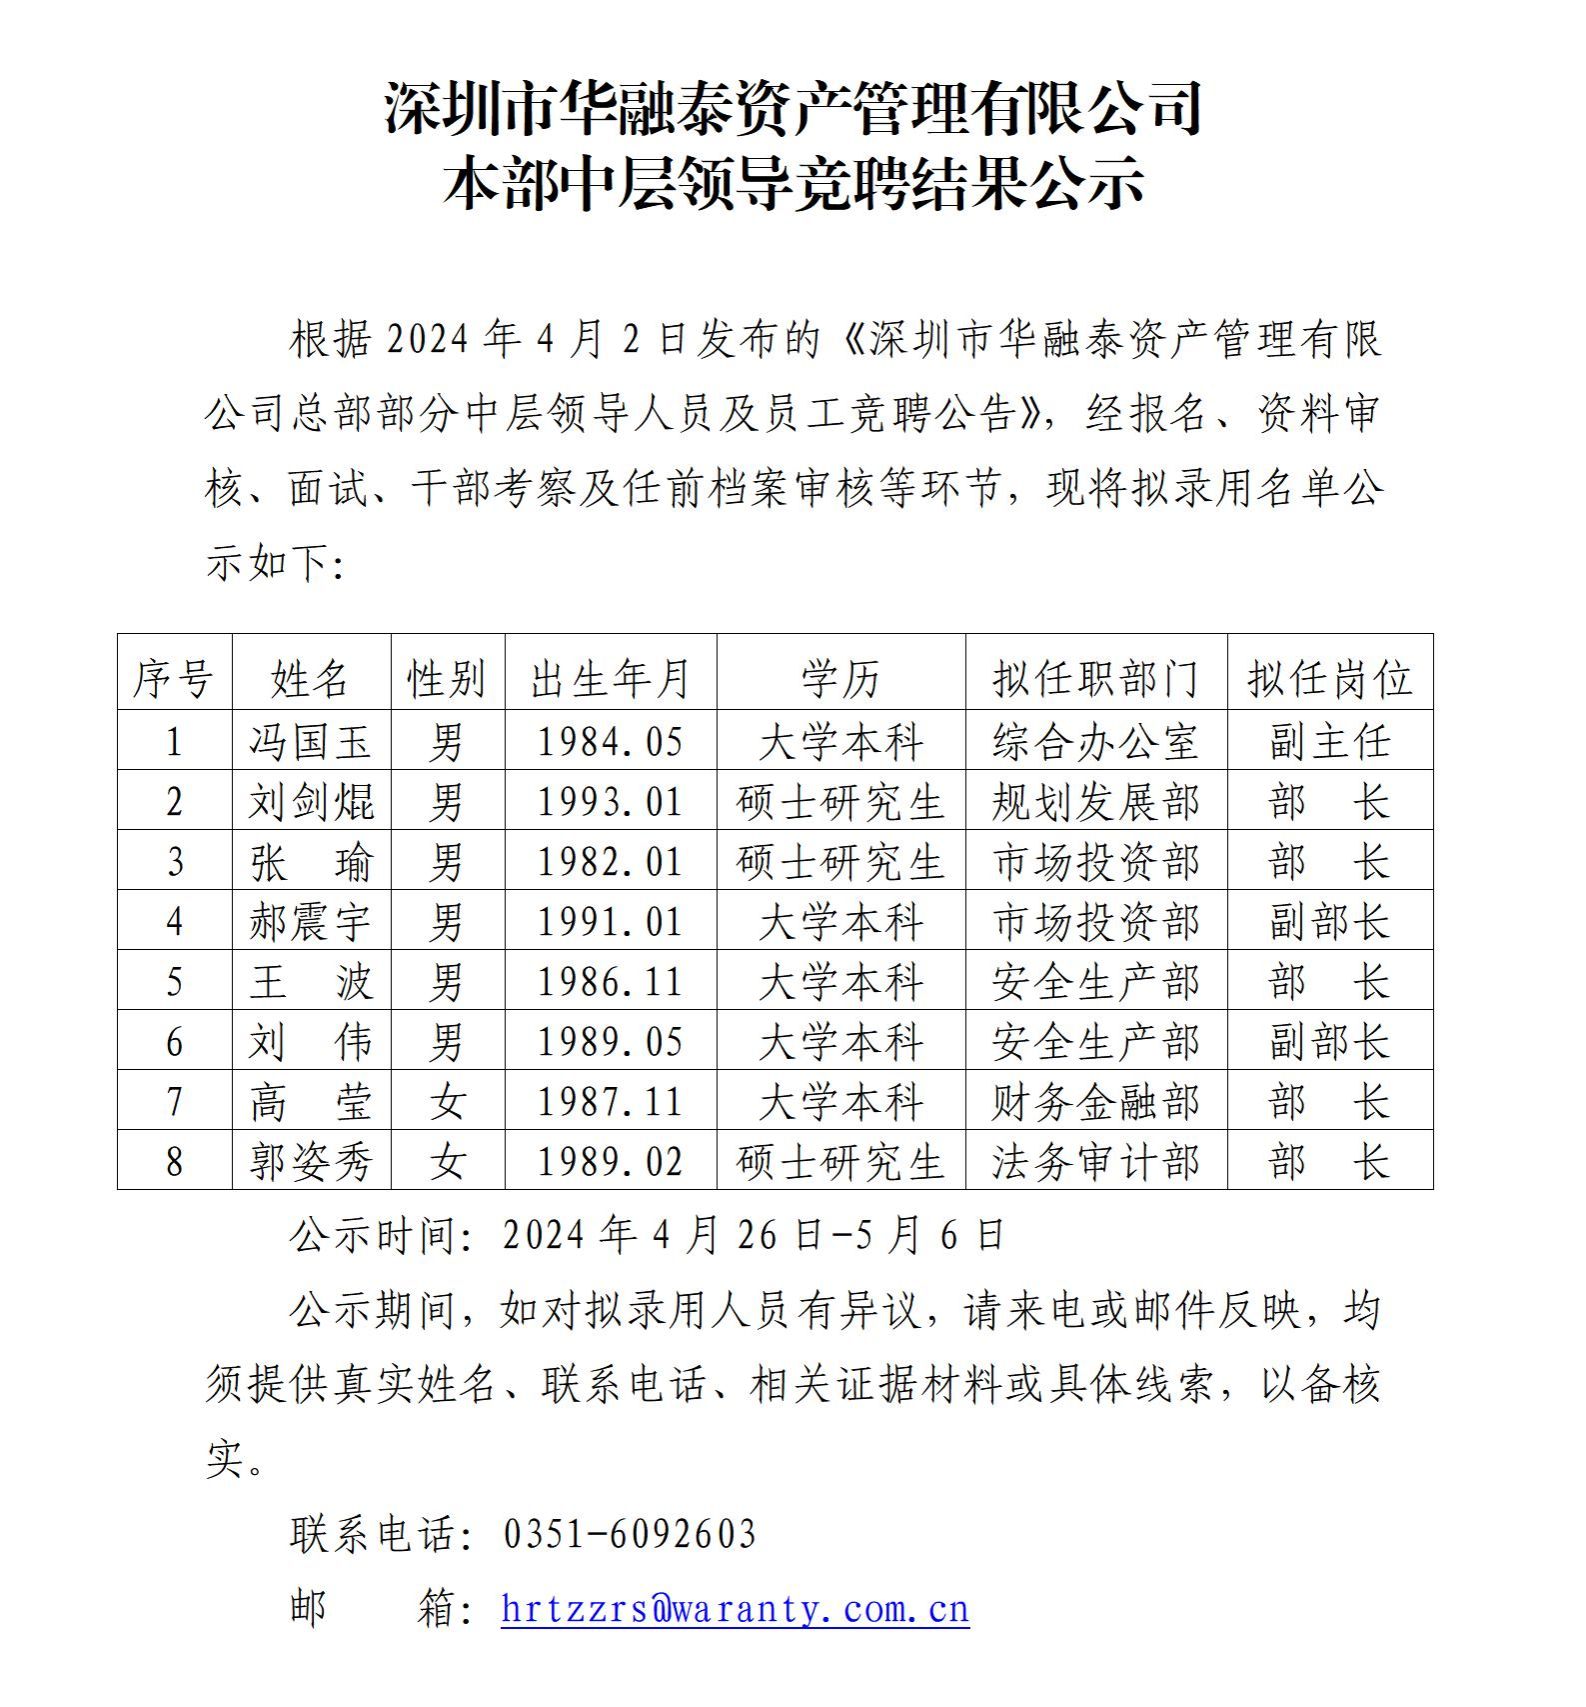 深圳市華融泰資產管理有限公司本部中層領導競聘結果公示